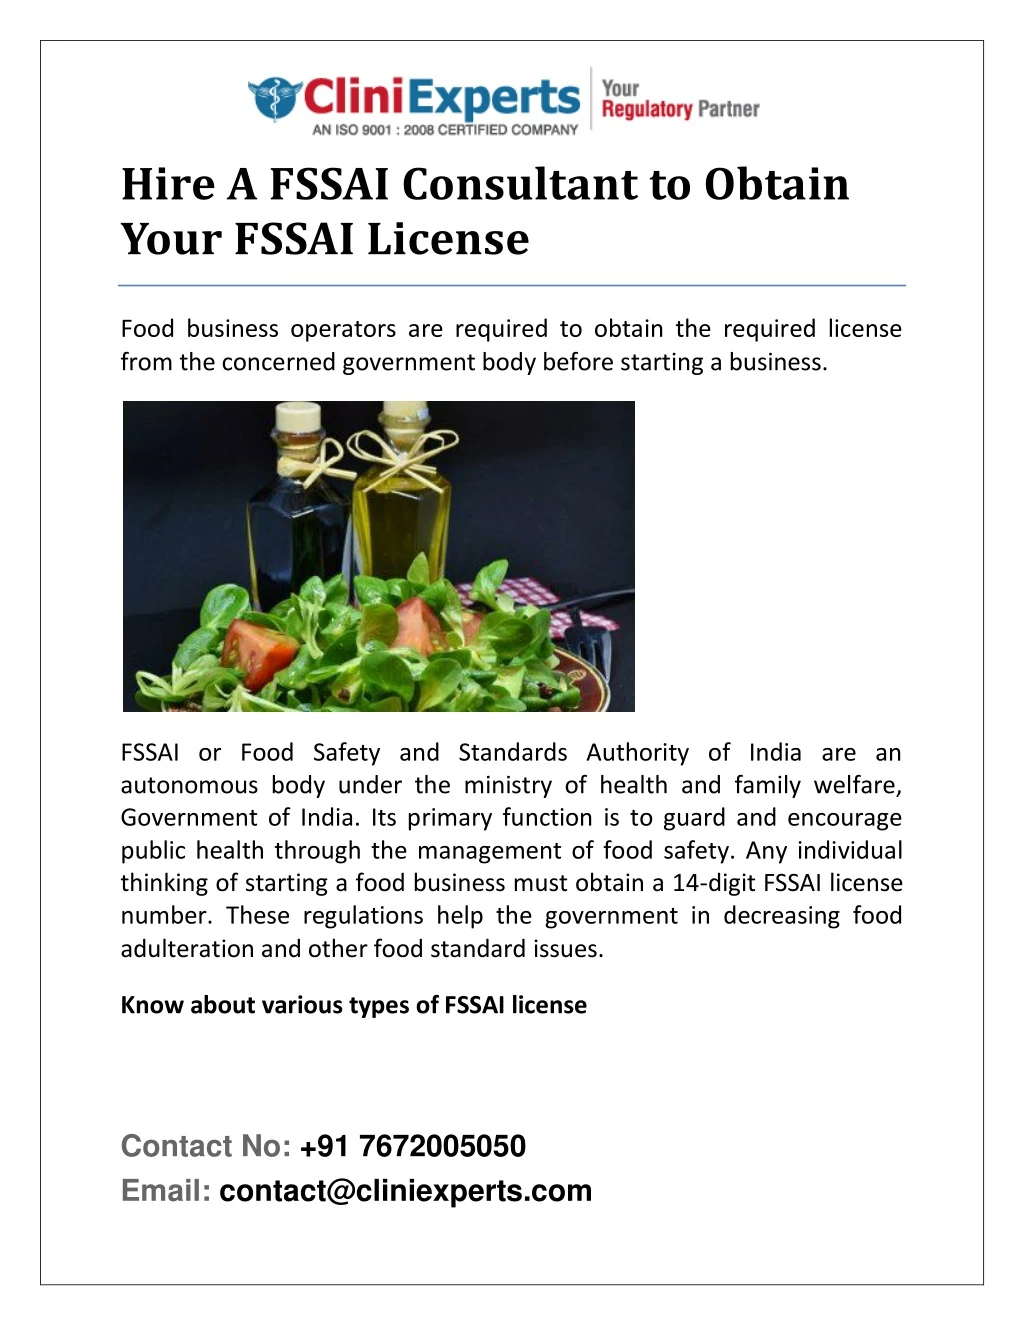 hire a fssai consultant to obtain your fssai